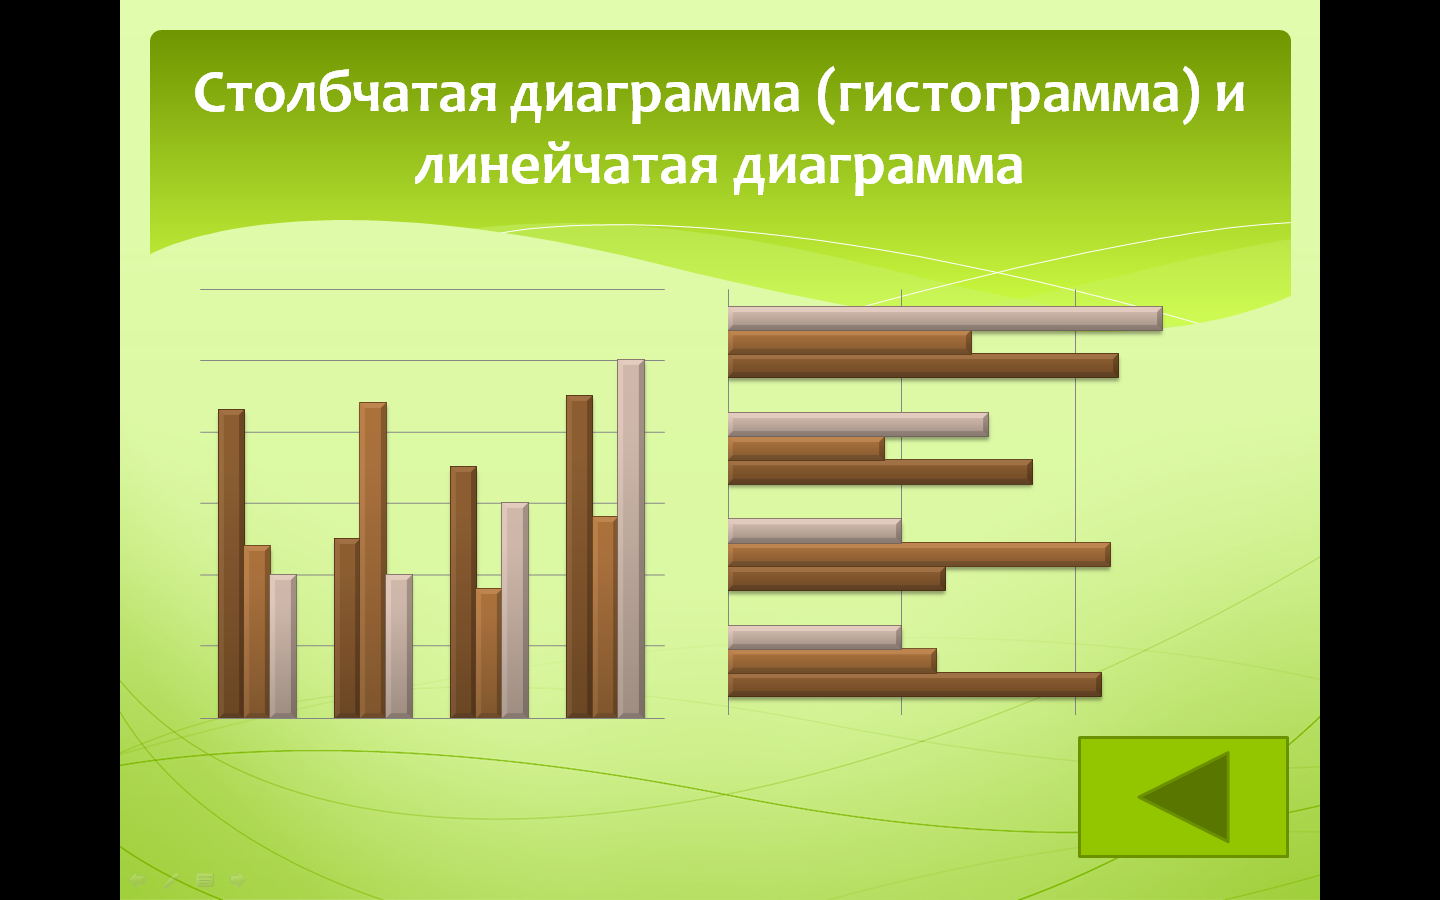 На диаграмме представлена информация о затратах мебельной фабрики на приобретение дерева стекла